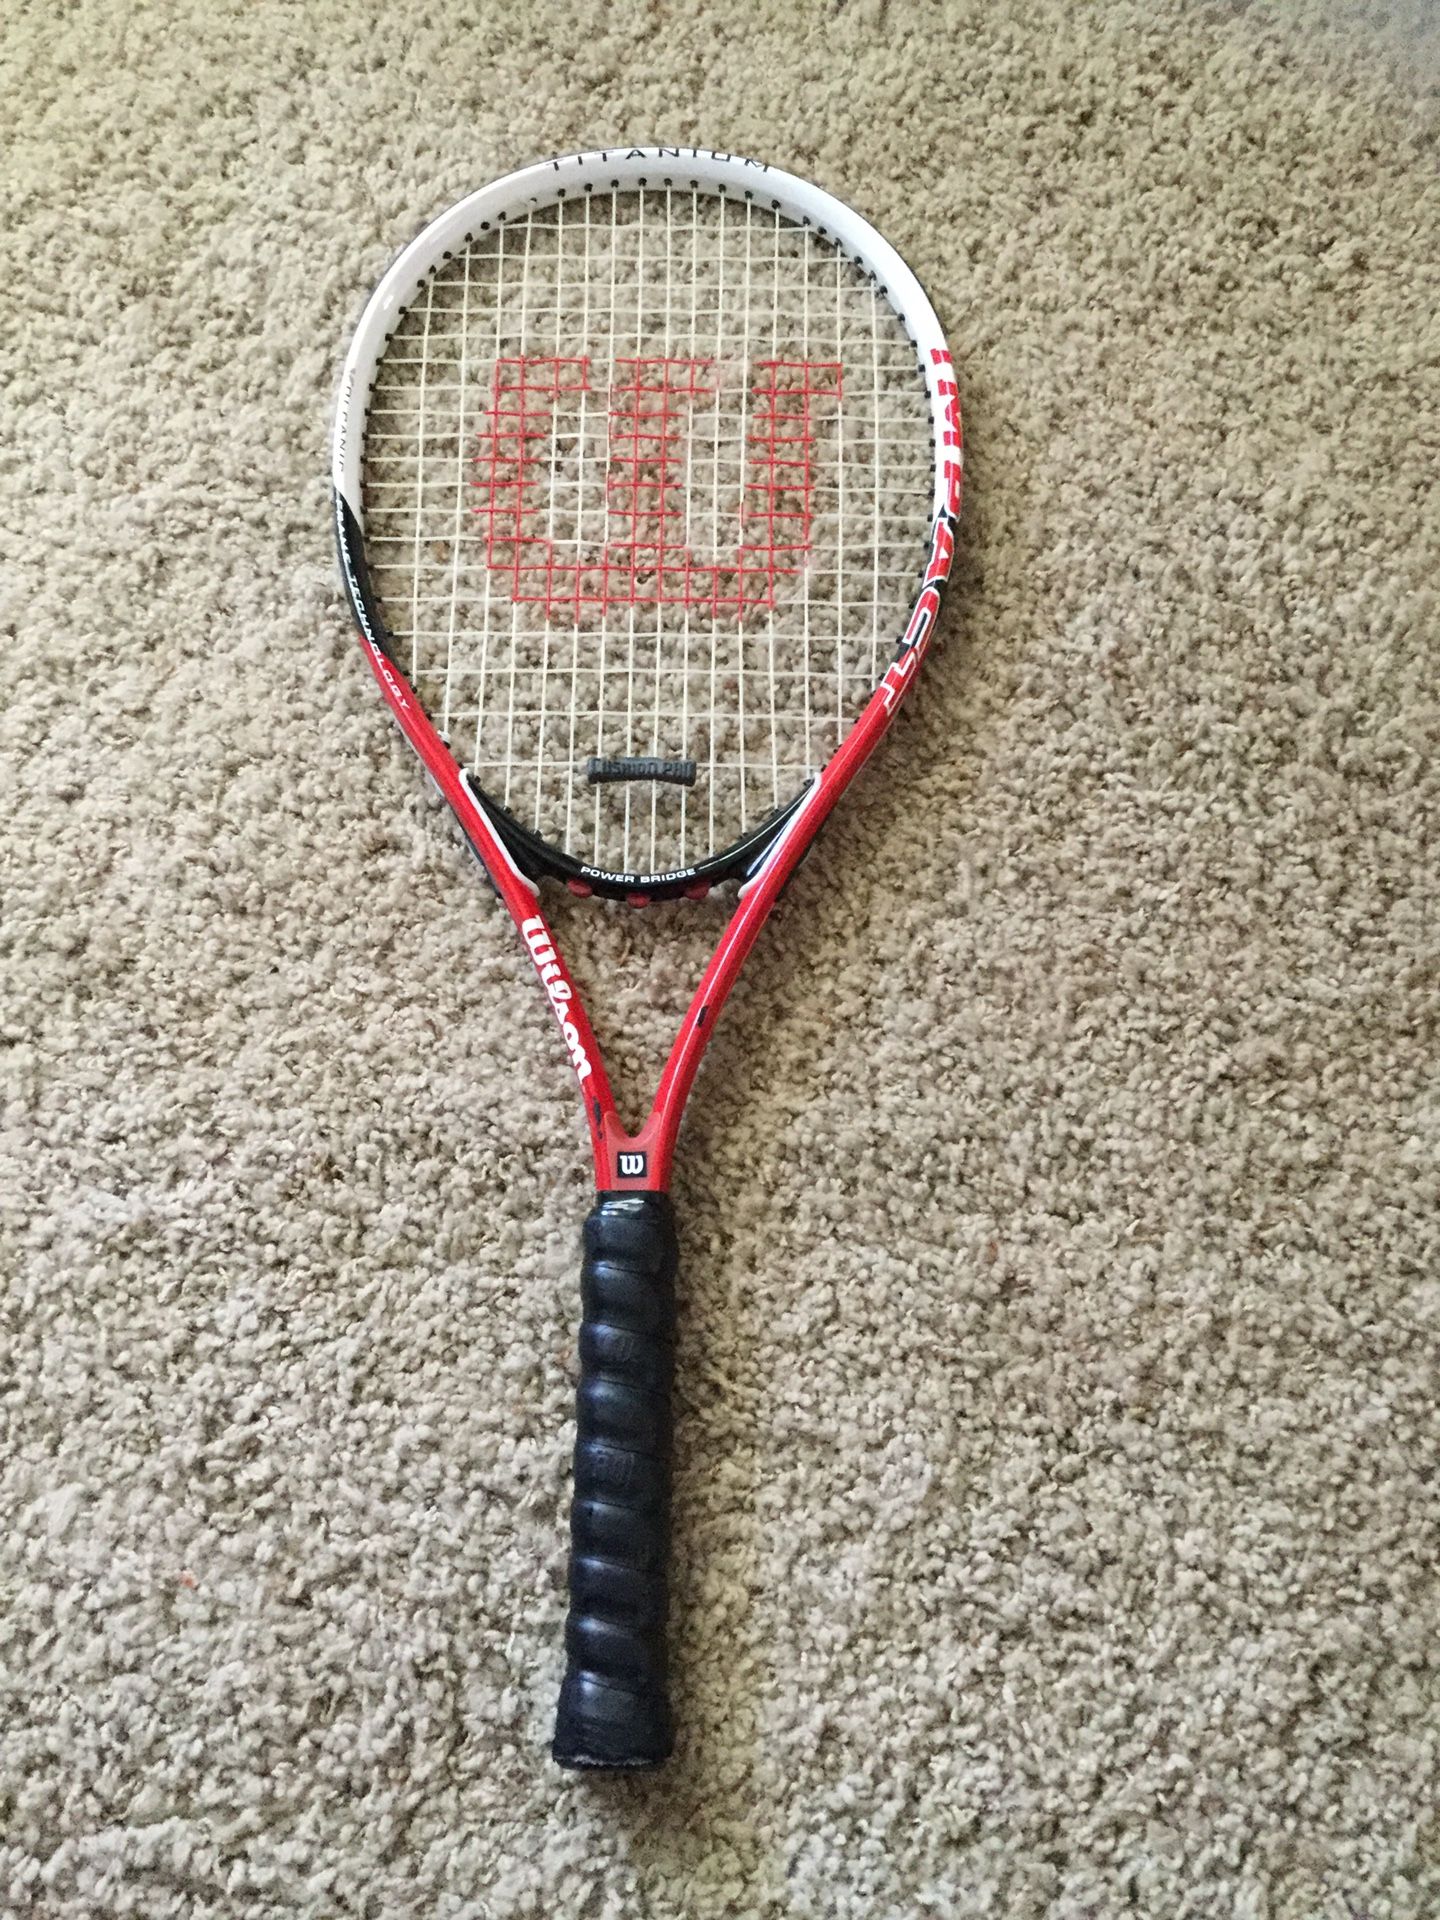 (3) tennis rackets